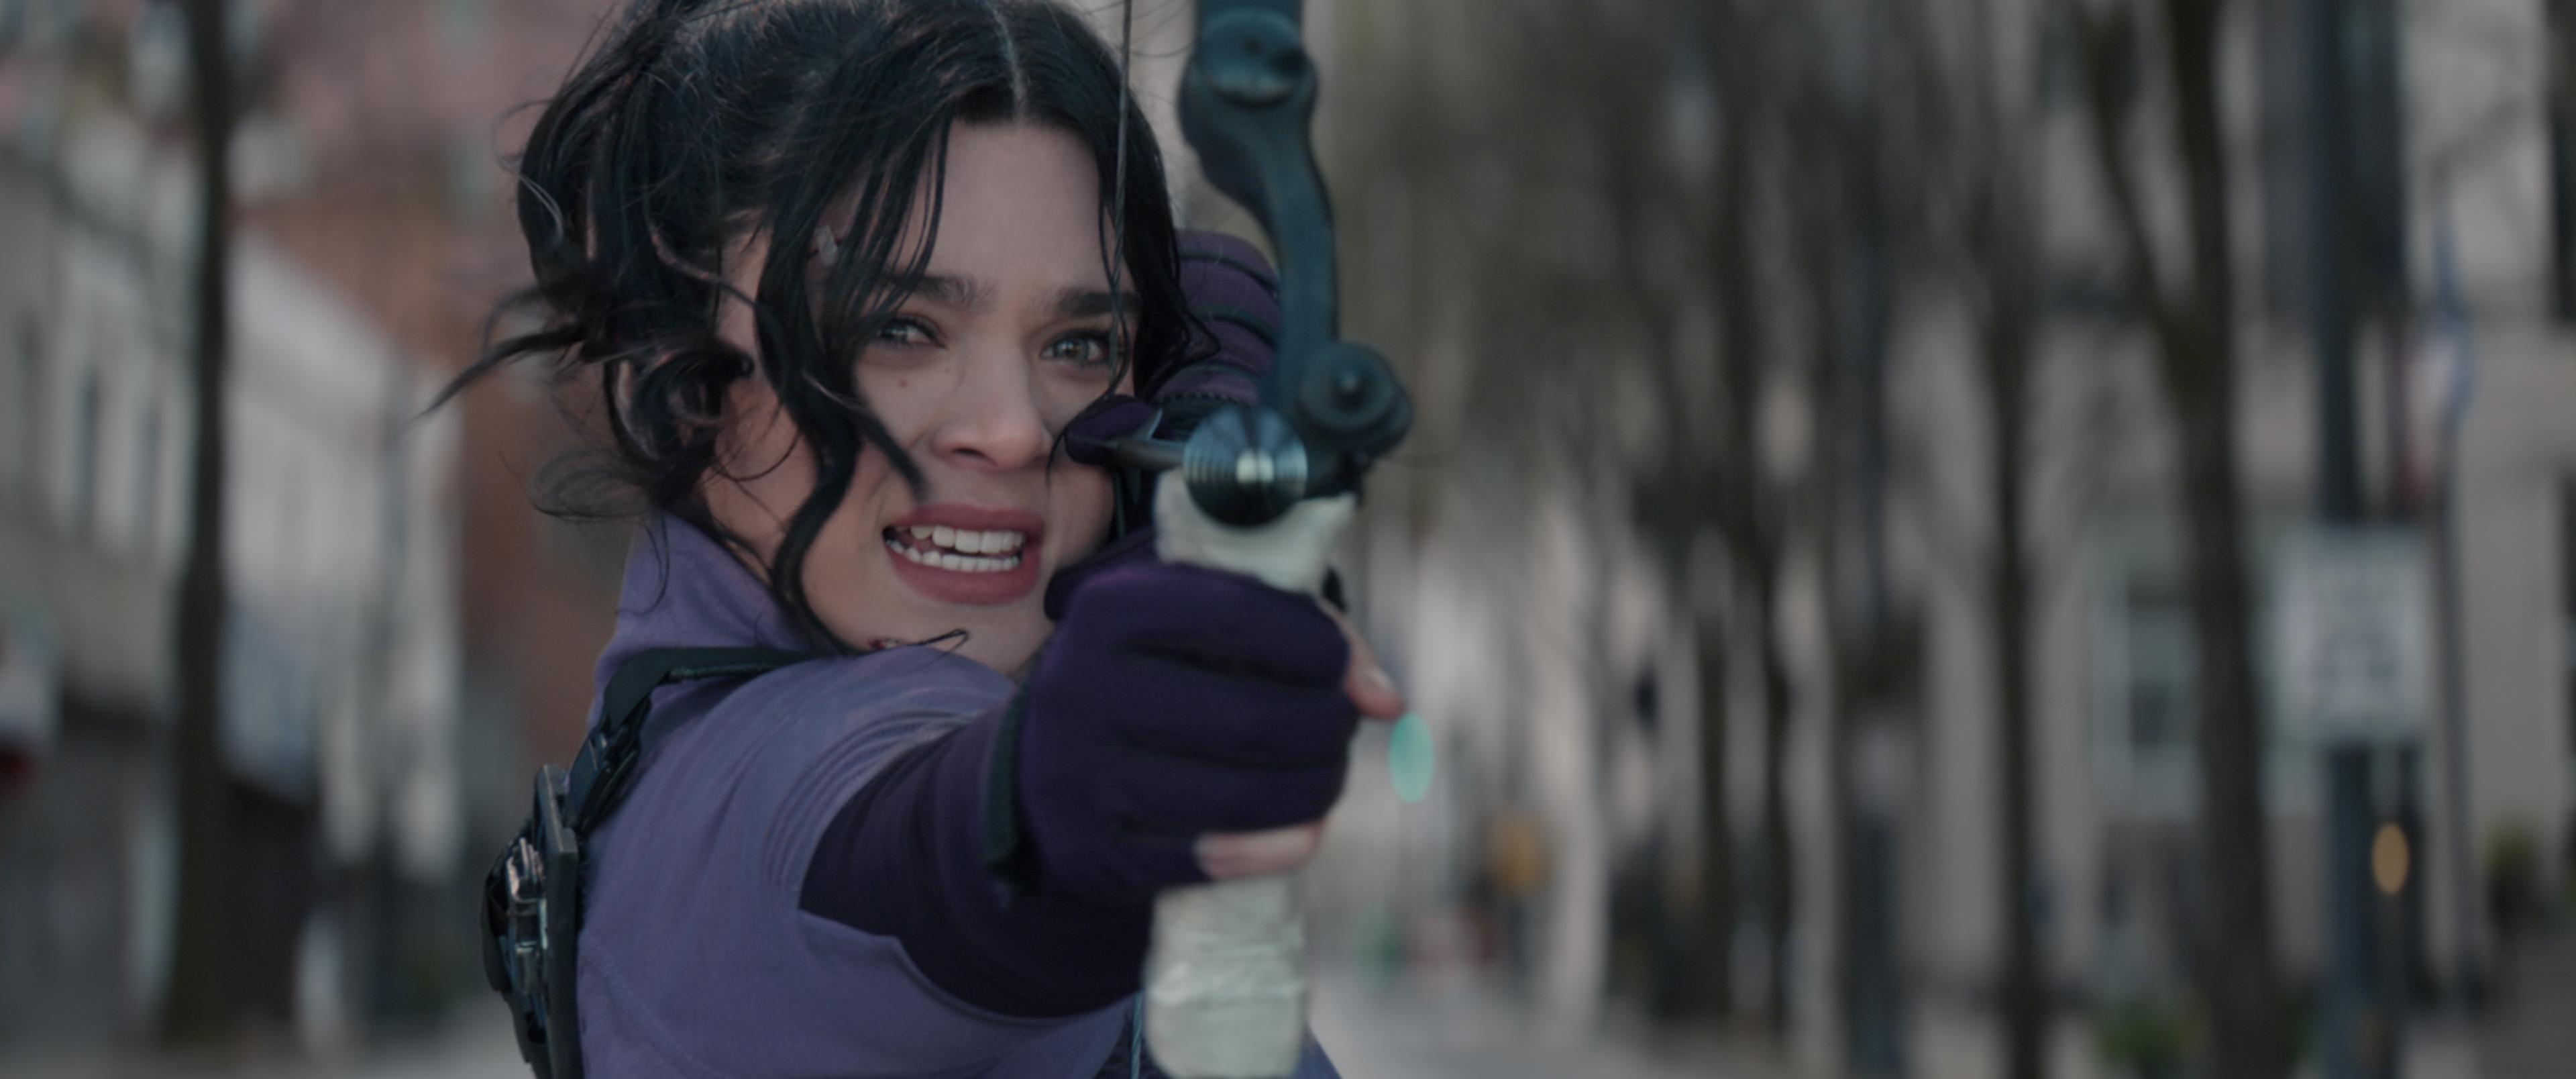 Kate Bishop shoots an arrow in 'Hawkeye'